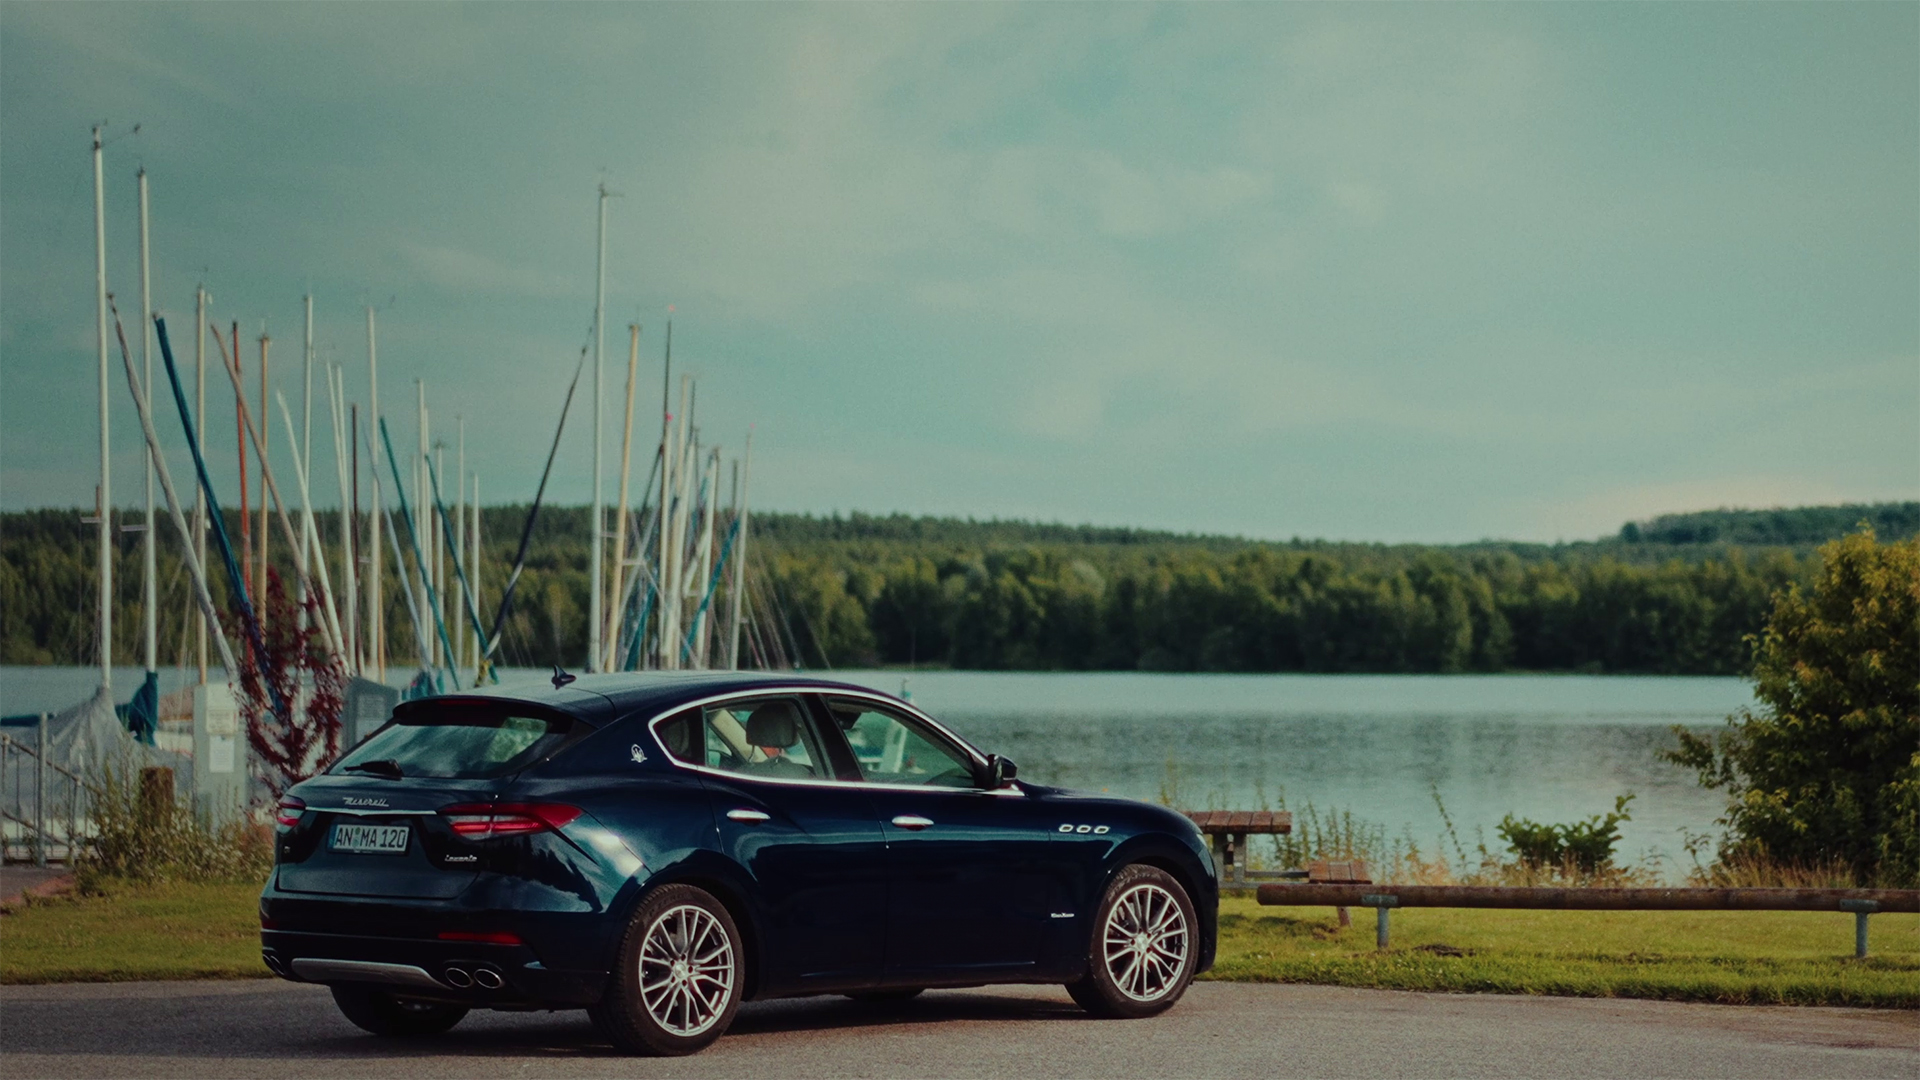 Bild aus dem Werbeclipdreh für Maserati